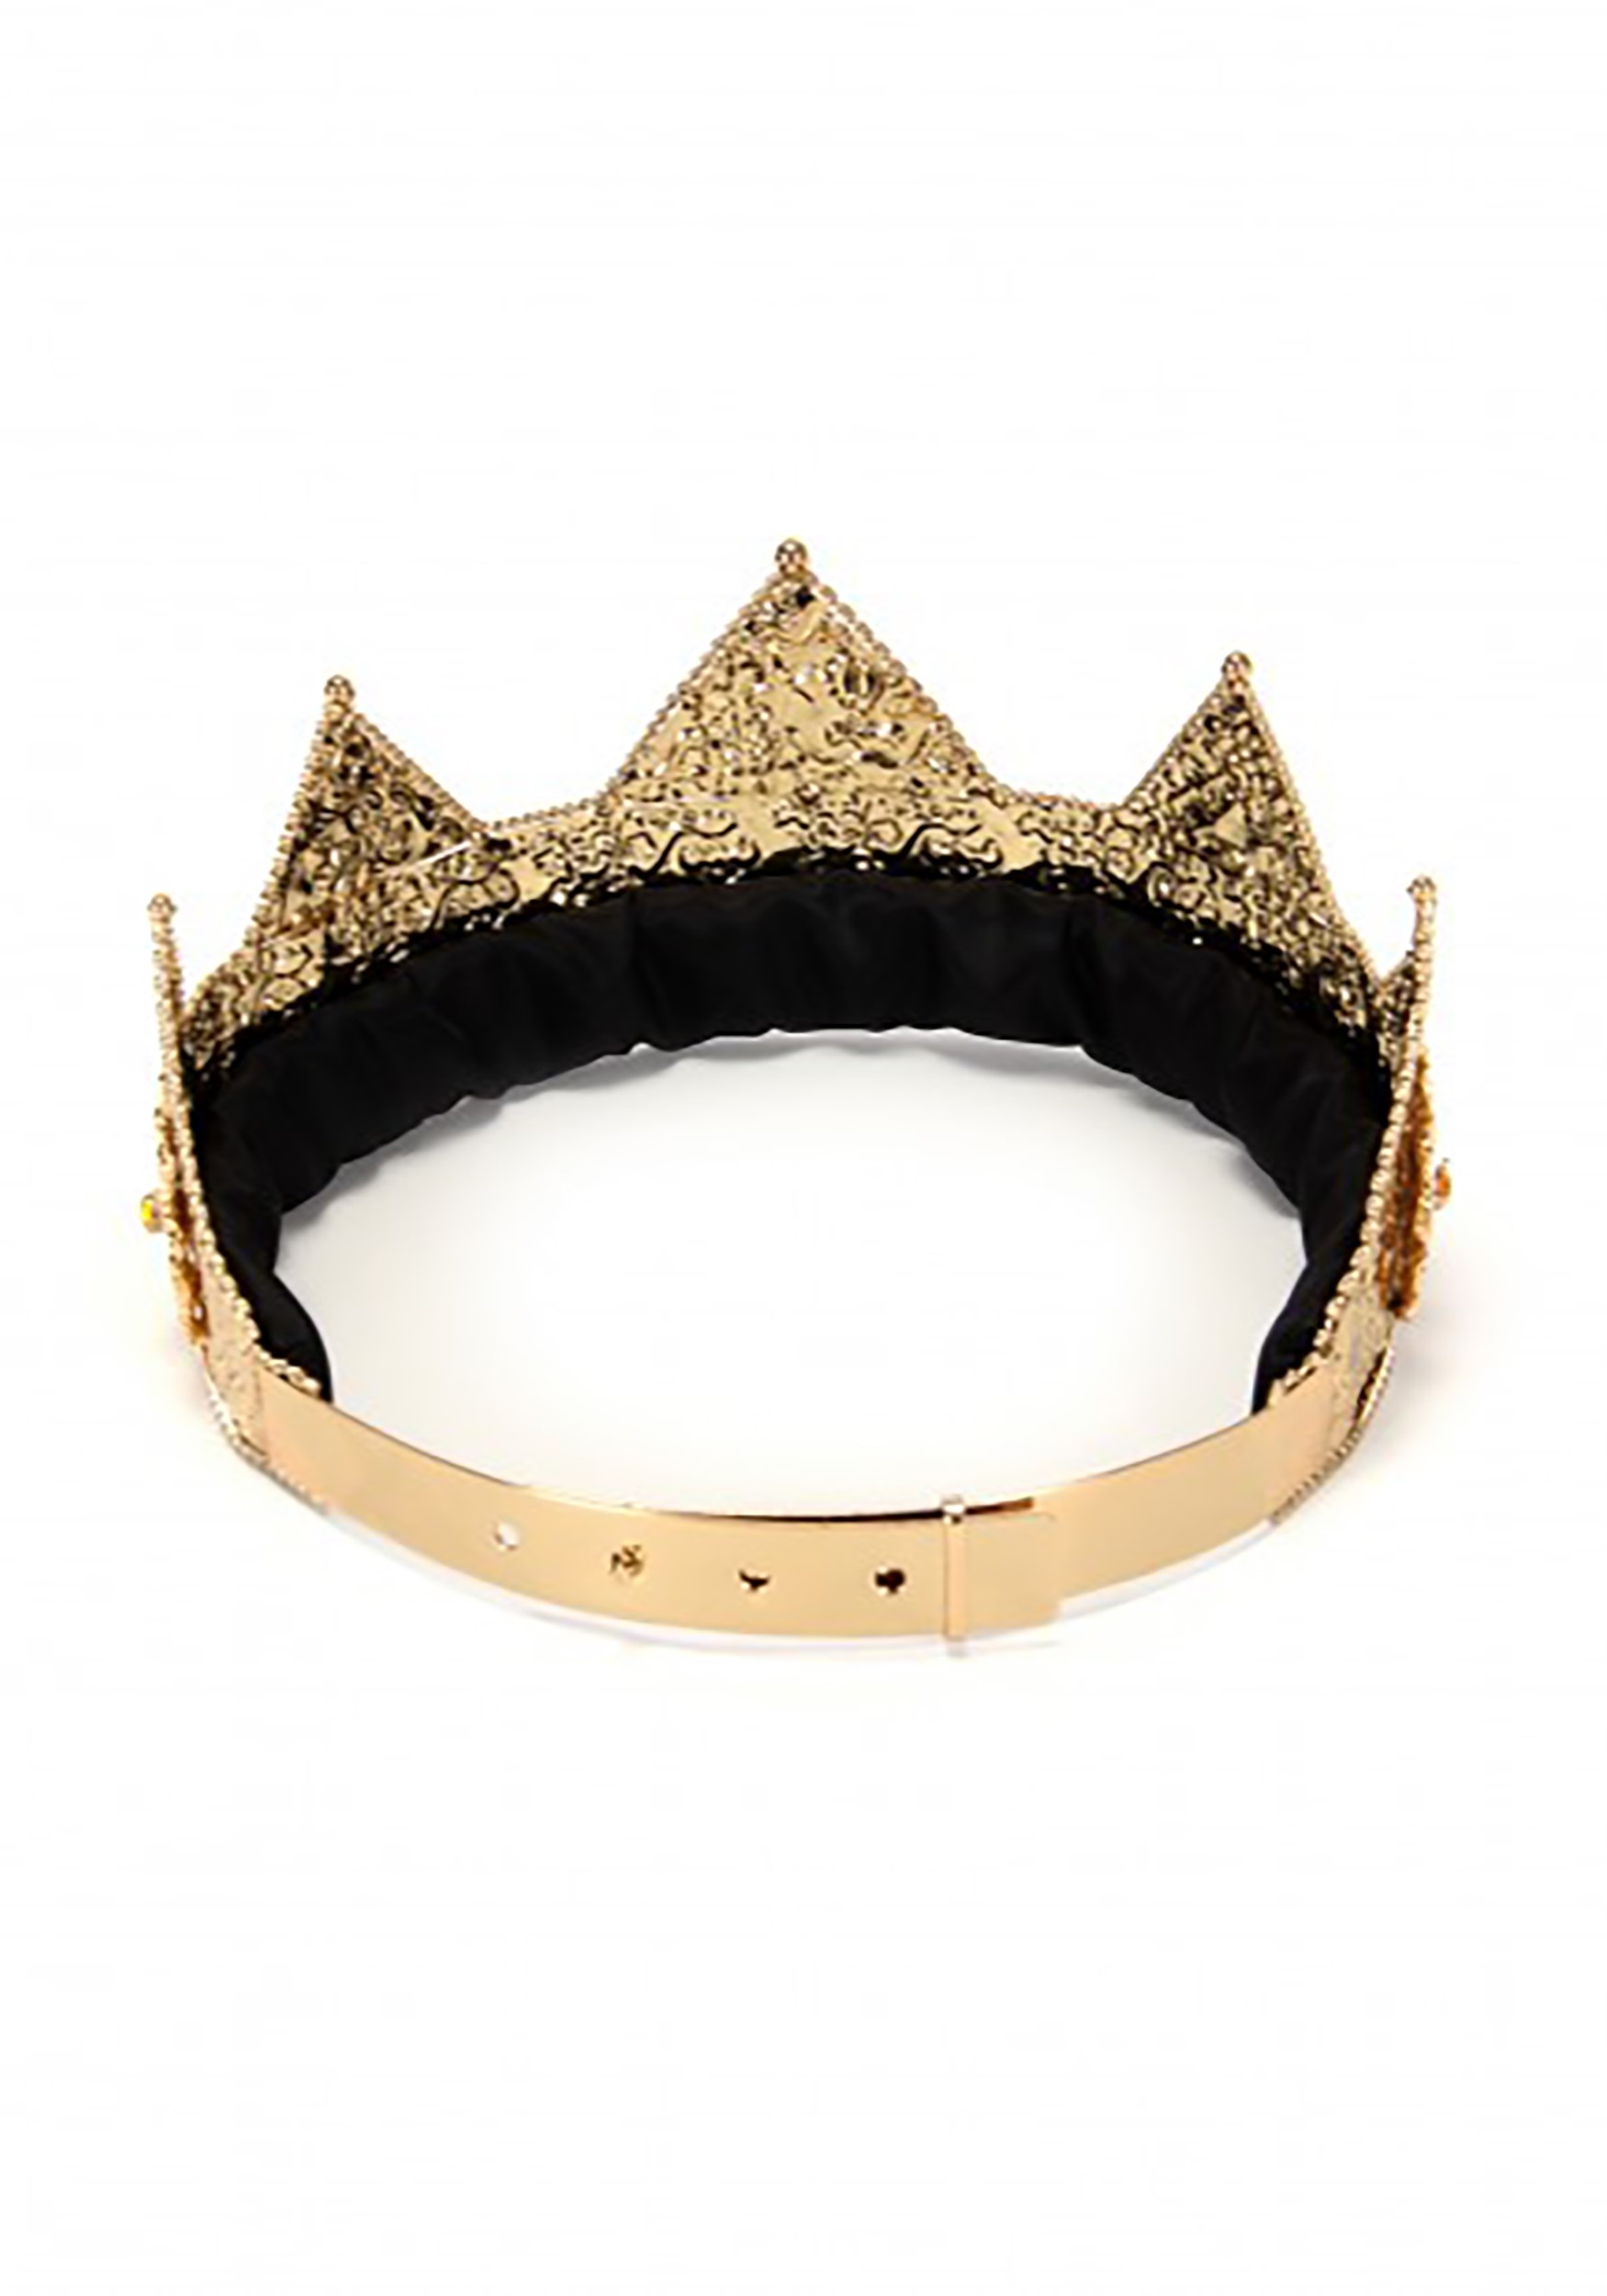 Gold & Gems Ladies Pointed Crown Adjustable 3